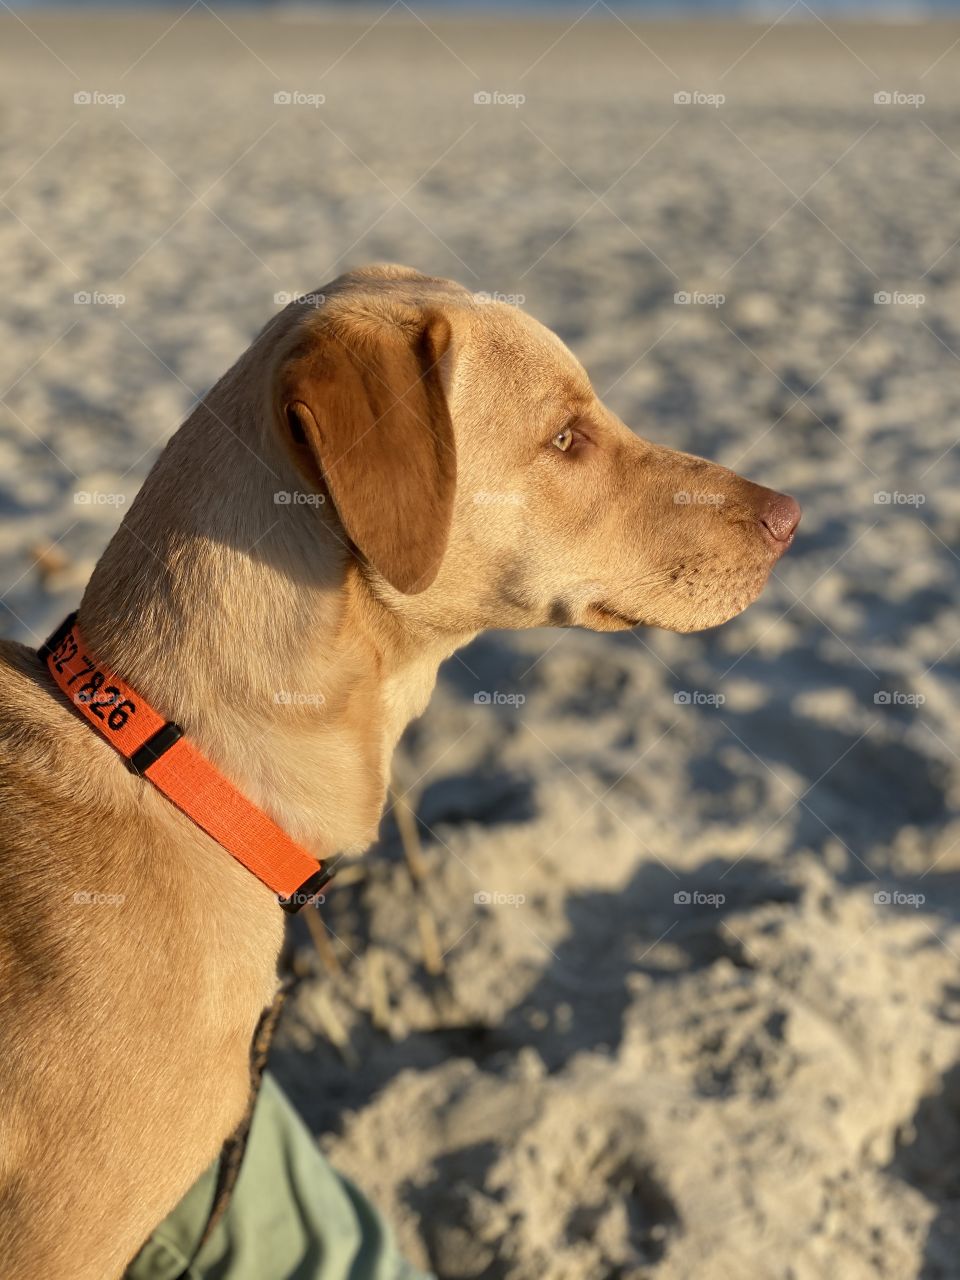 Beach puppy